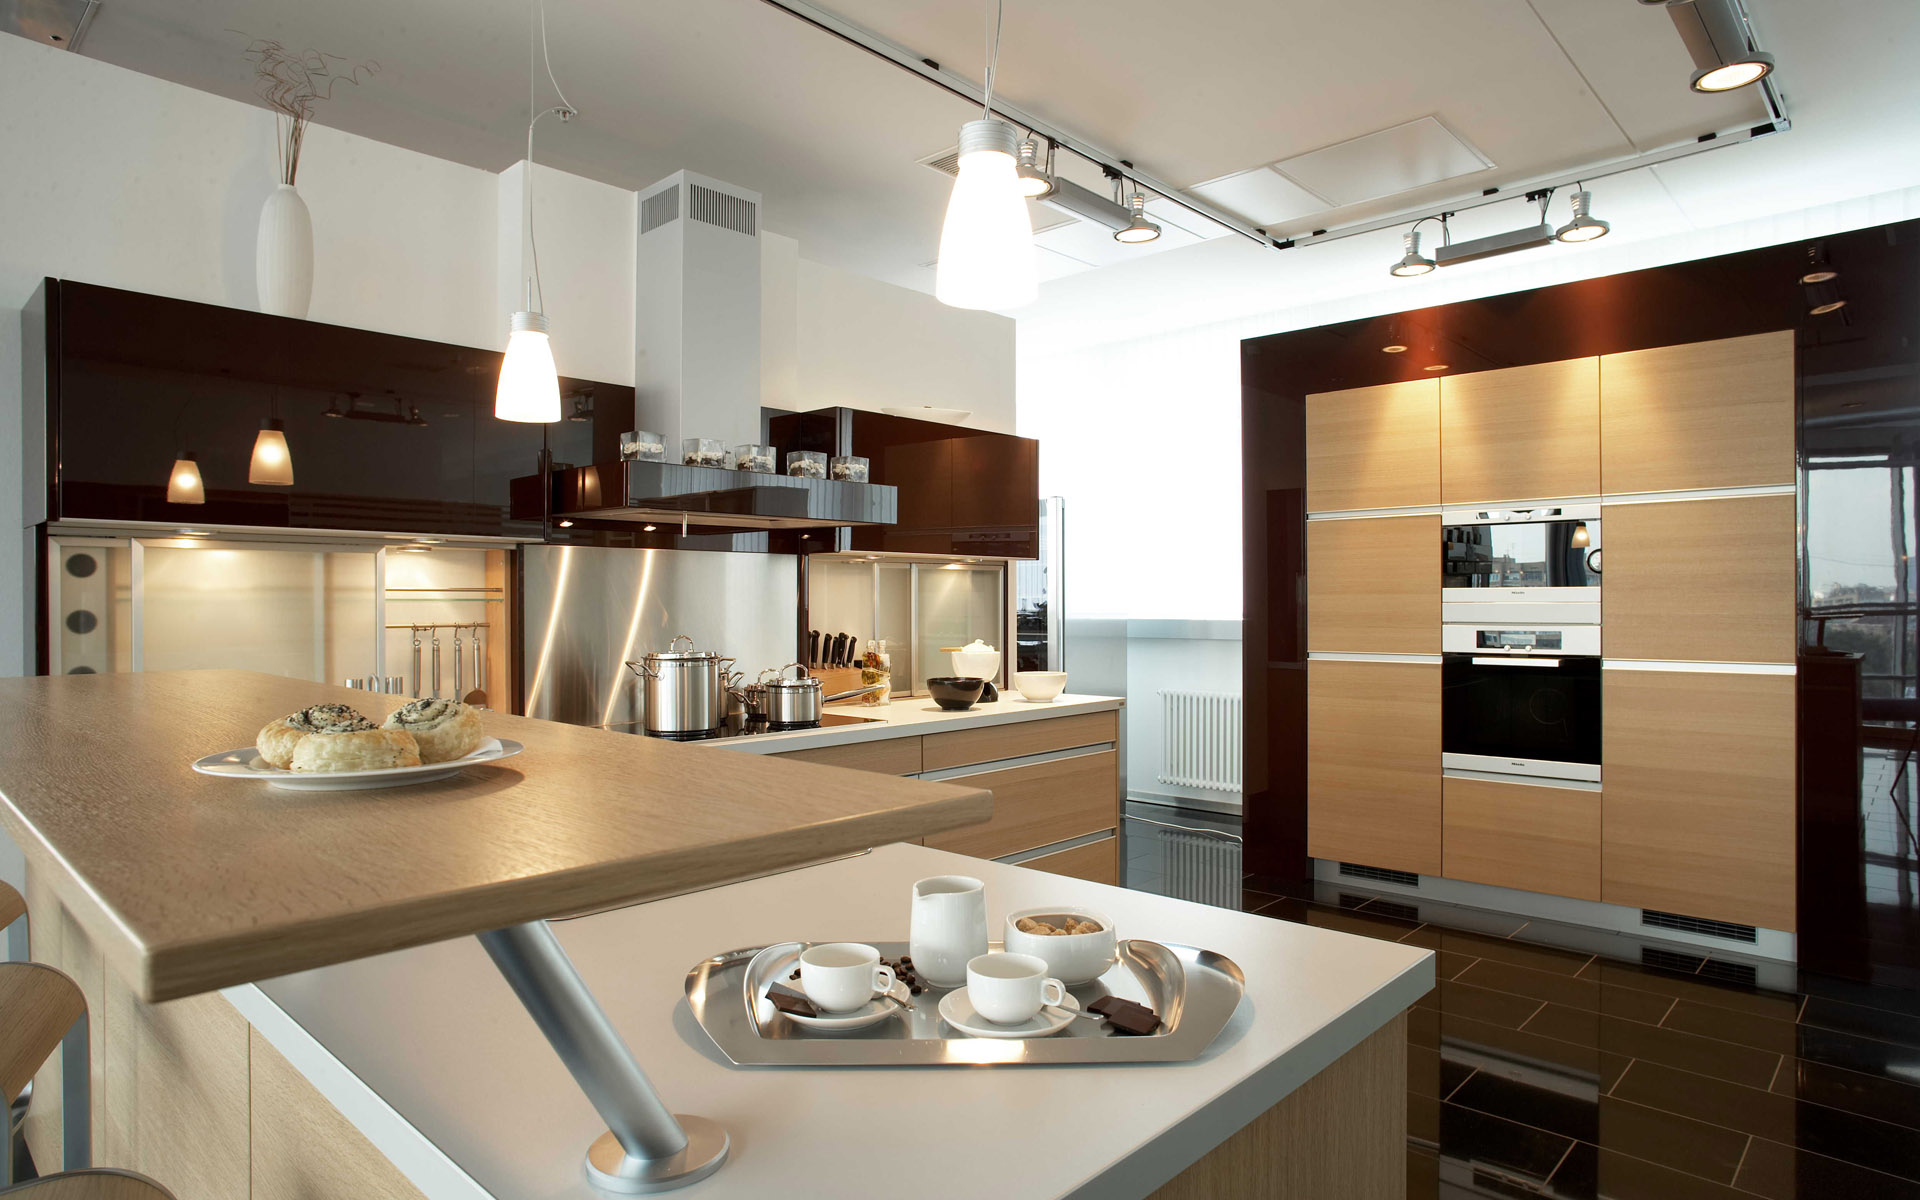 kabinet dapur moden dengan unsur kayu menjadikan ruang dapur lebih menyerlah